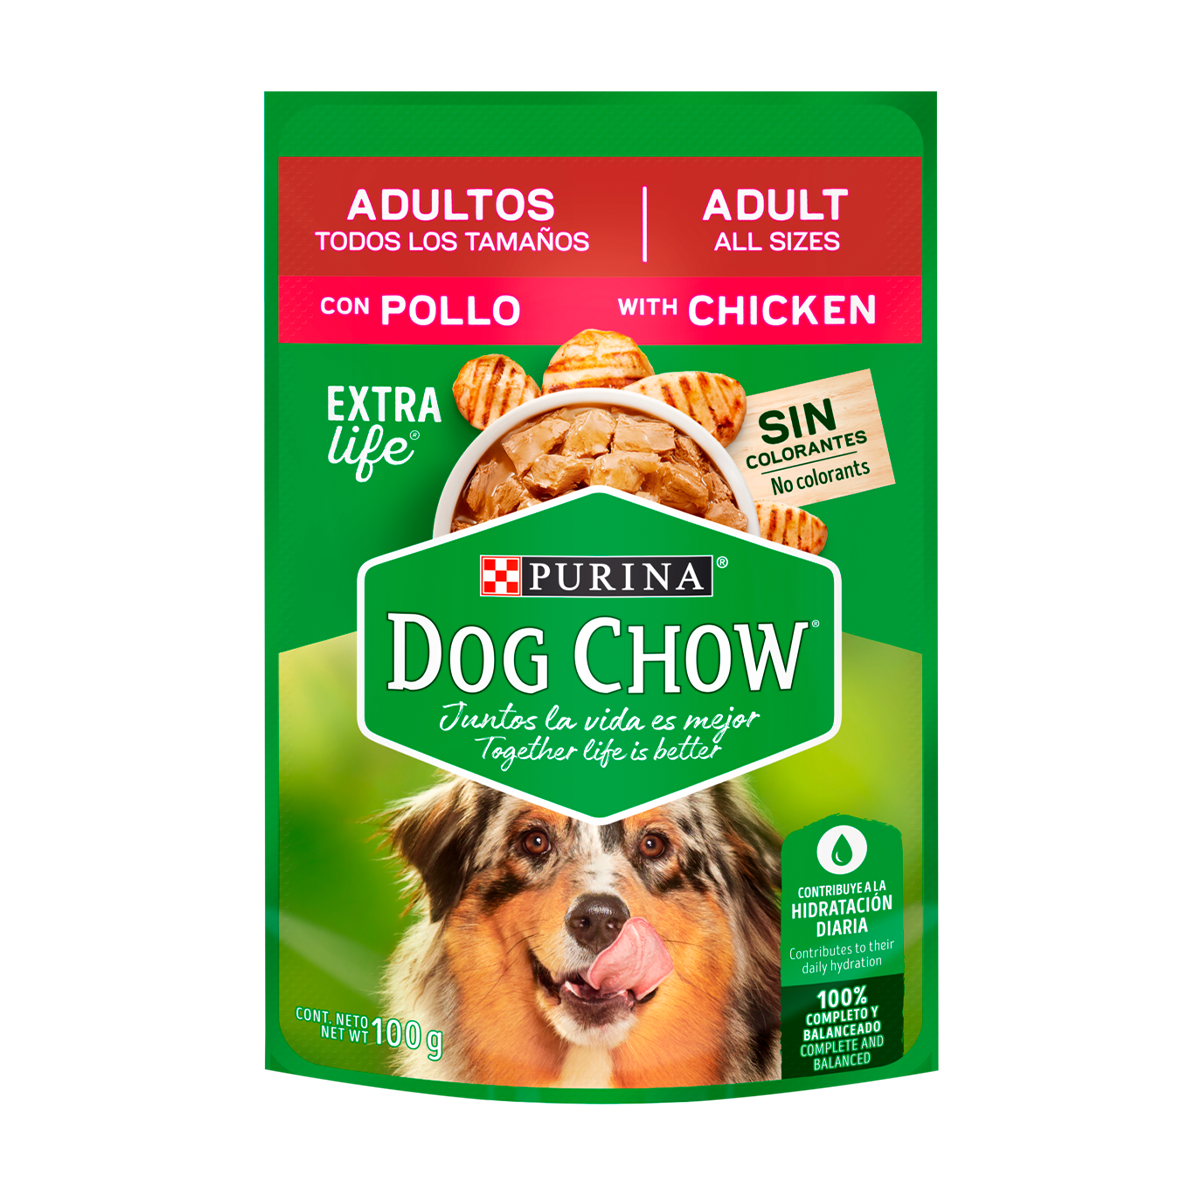 purina-dog-chow-alimento-h%C3%BAmedo-adultos-todos-los-tama%C3%B1os-con-pollo.png